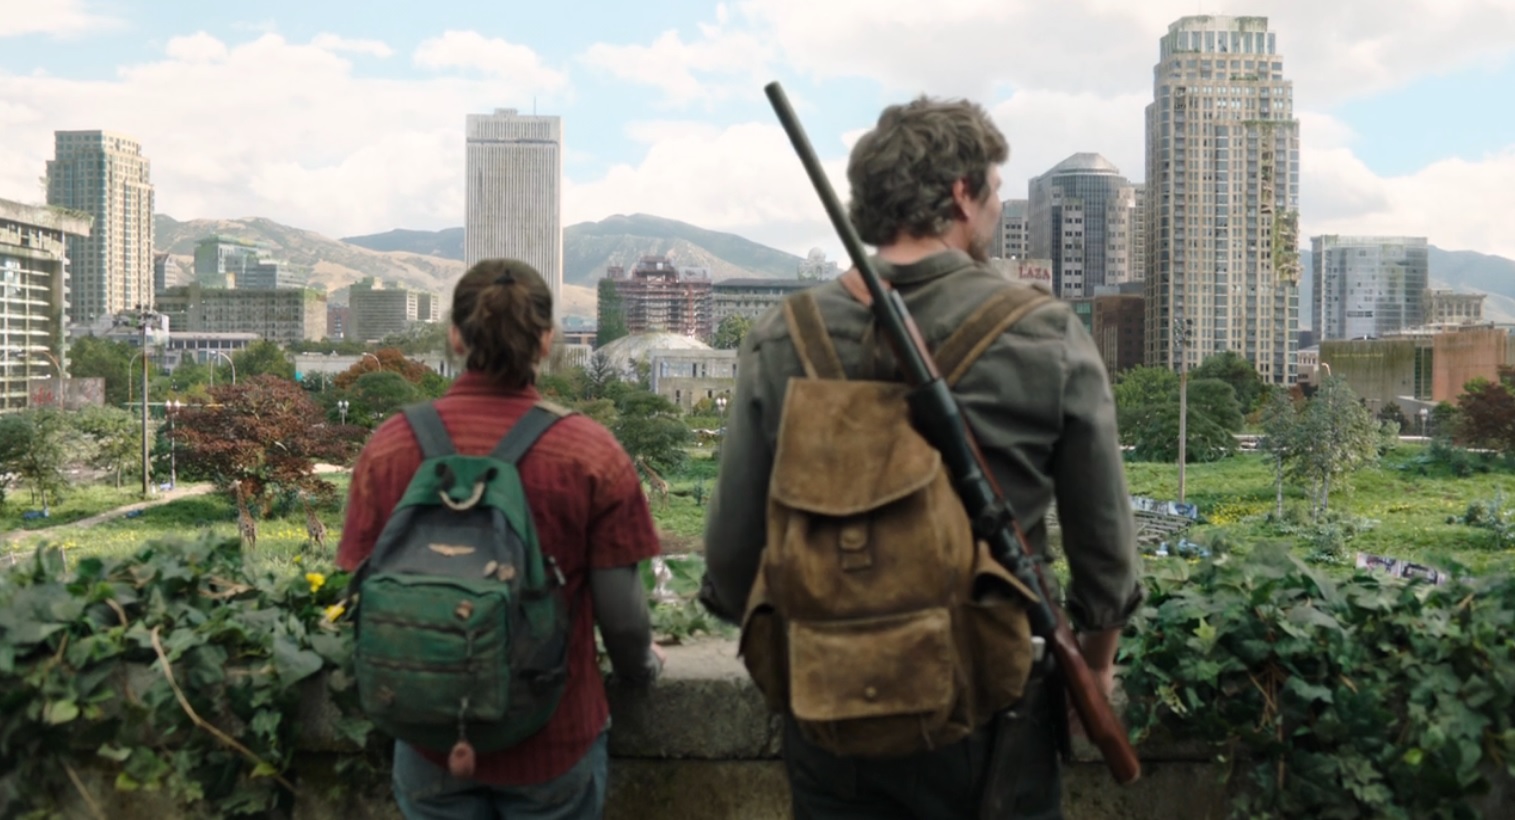 Episódio 4 de The Last of Us da HBO consagra Pedro Pascal